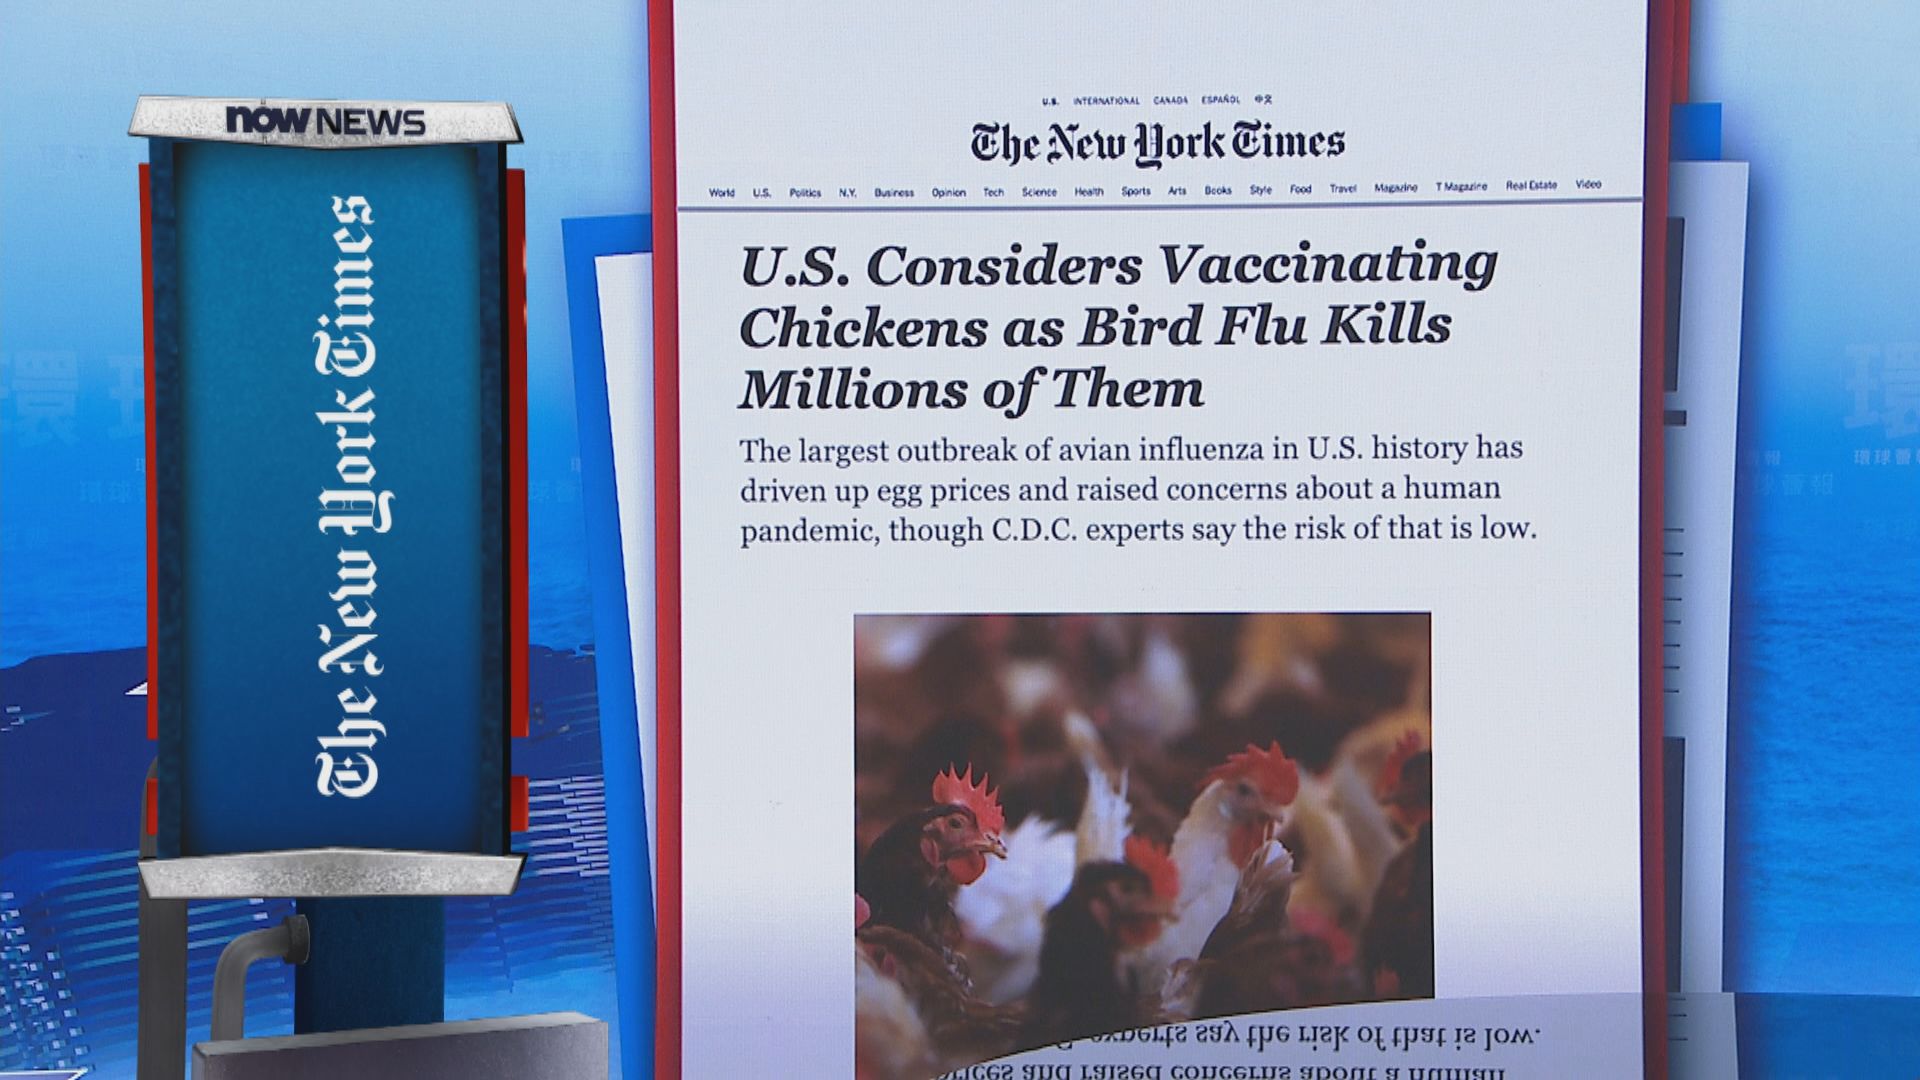 【環球薈報】美國考慮為雞隻大規模接種禽流感疫苗